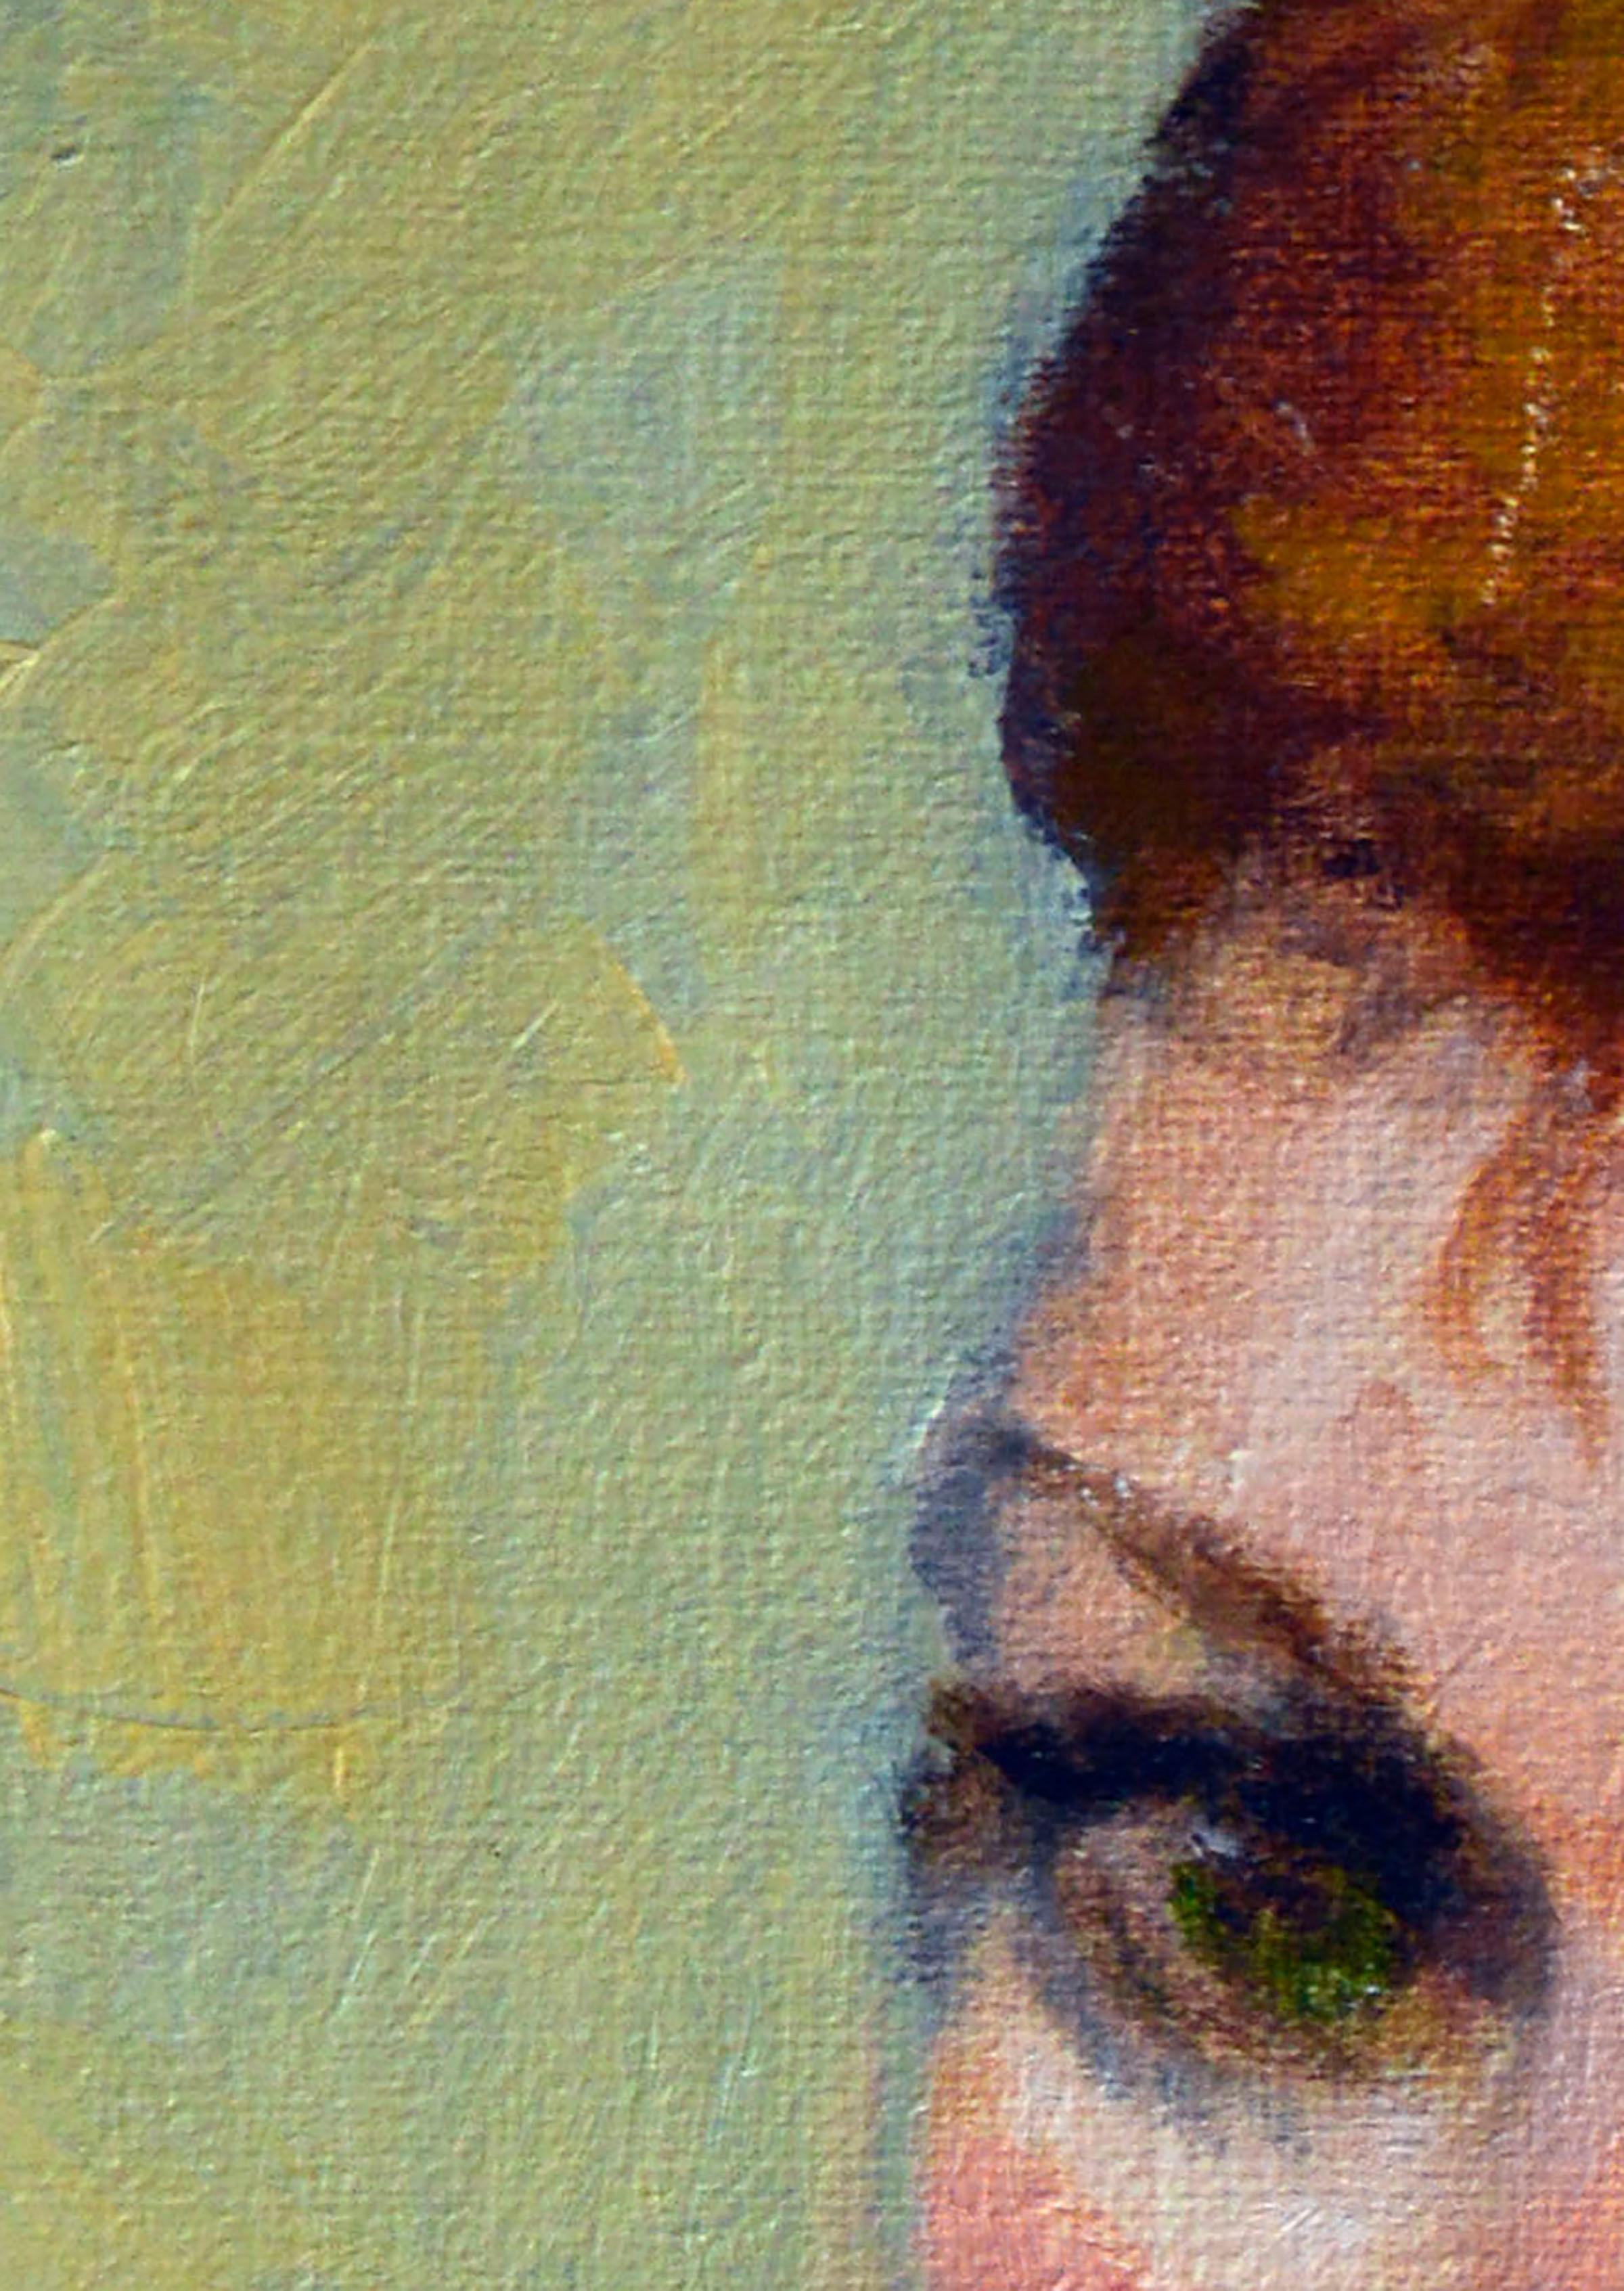 Porträt einer Frau mit grünen Augen, die durch den hellgrünen Hintergrund hervorgehoben werden, von der aus Monterey, Kalifornien stammenden Künstlerin Patricia Gillfillan (Amerikanerin, 1924-2016). Aus einer Sammlung ihrer Werke. Nicht signiert.